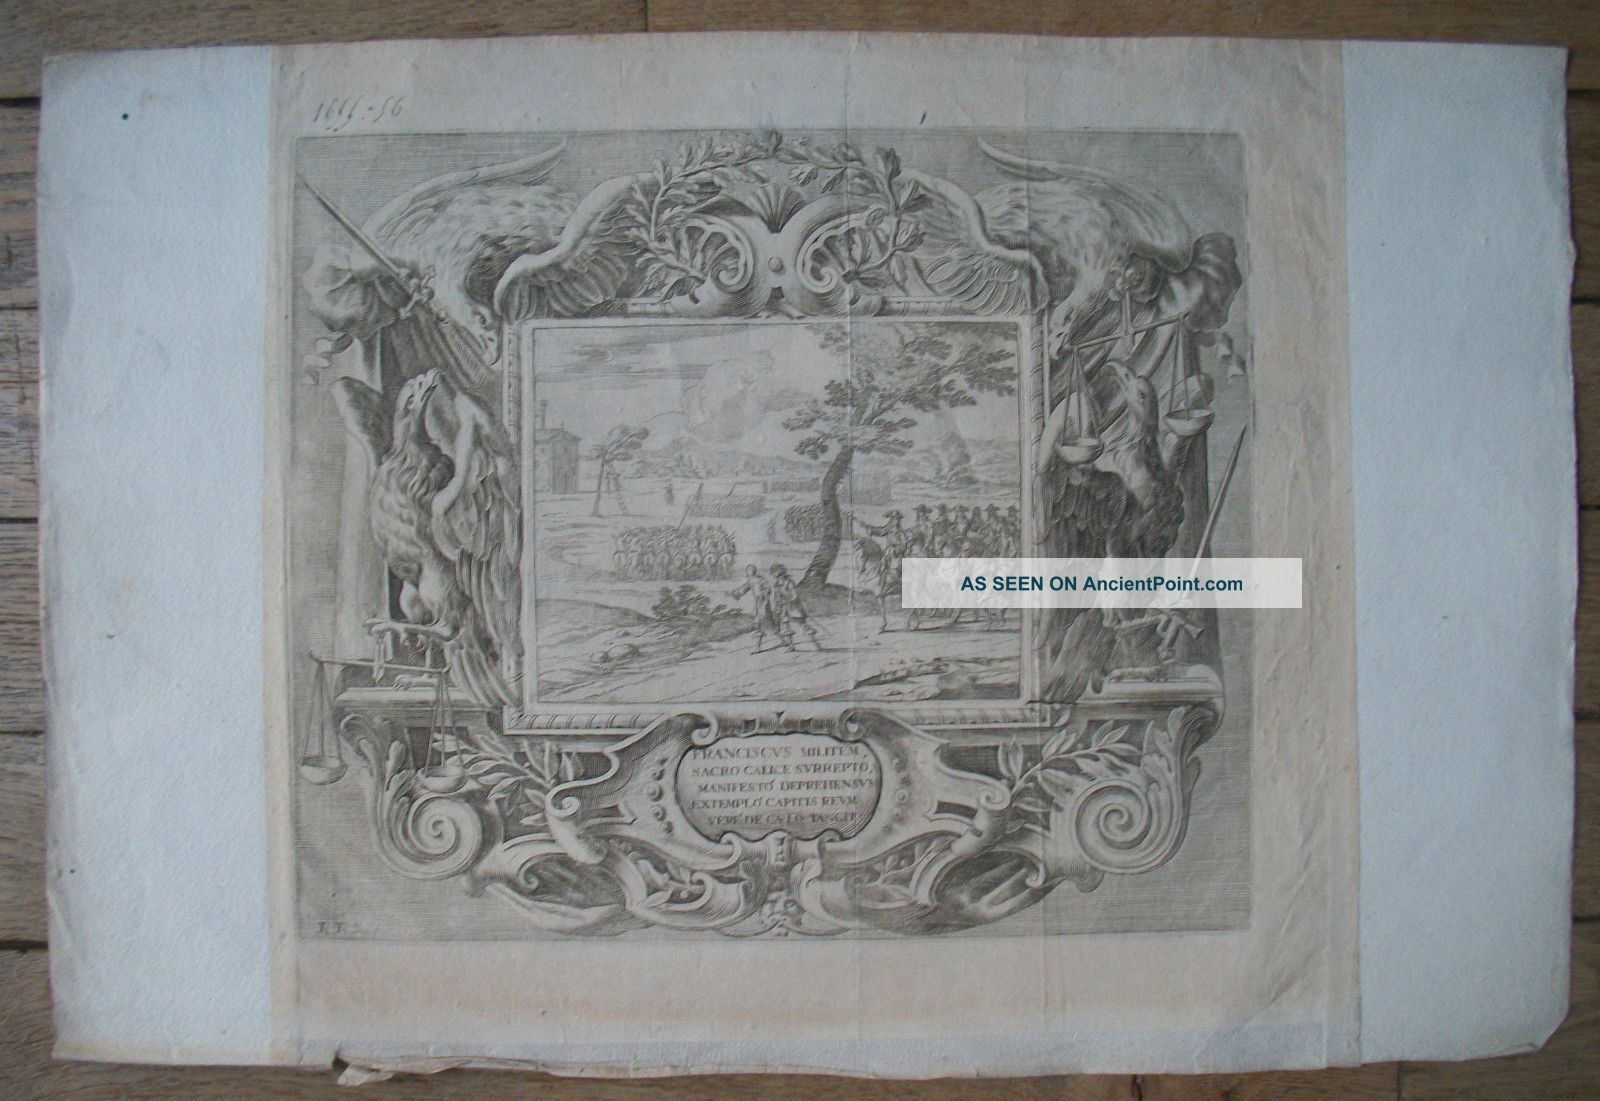 Fançois D ' Est Duc De Modène Et De Reggio - Bartholomé FÉnice - 1655 - 56 Near Eastern photo